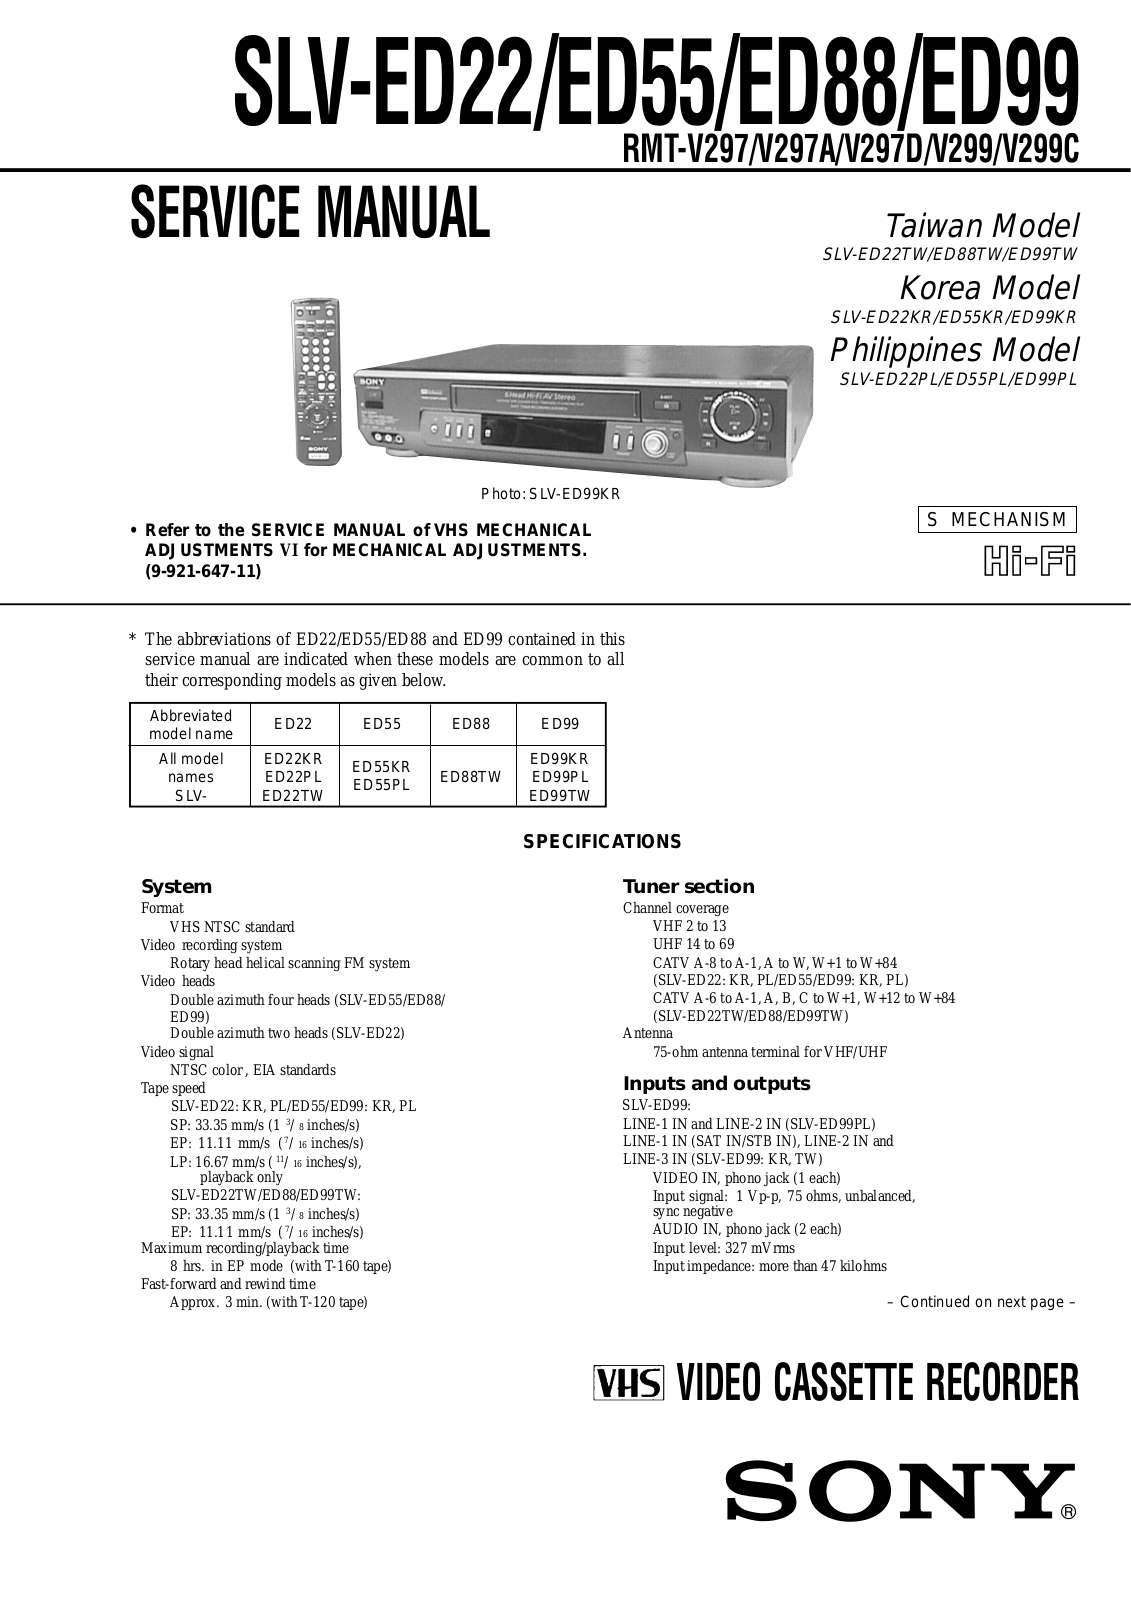 Sony SLV-ED22, SLV-ED55, SLV-ED88, SLV-ED99 Service manual